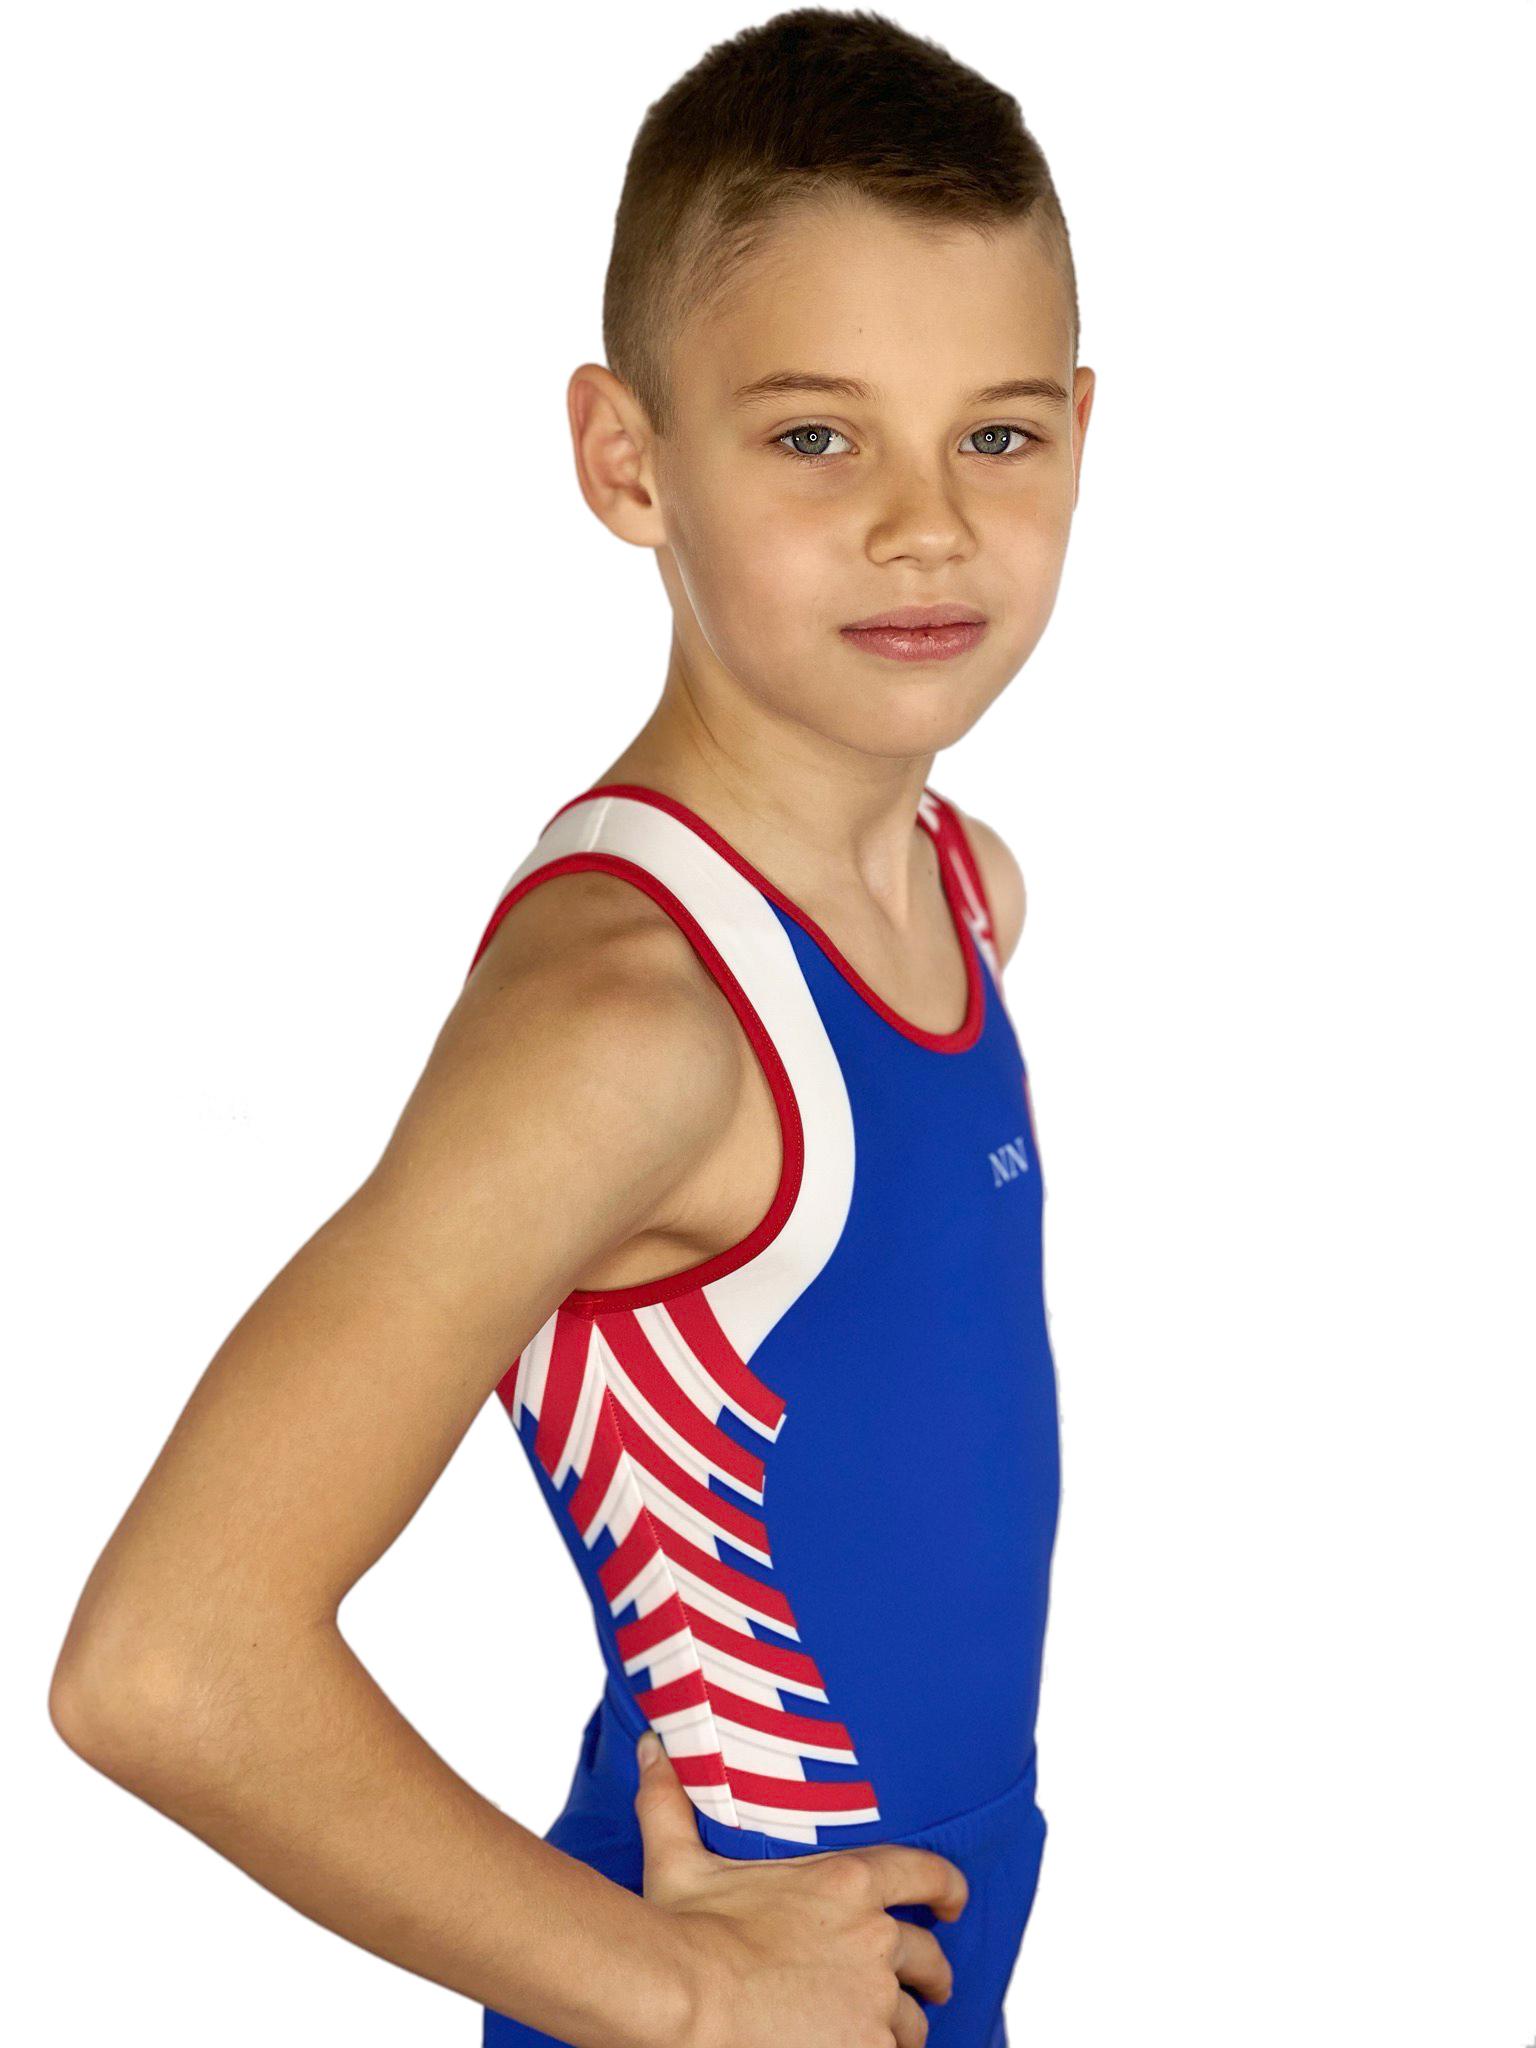 Купальник мужской для спортивной гимнастики GK Sport 201-17 синий с бело-красной вставкой без рукава